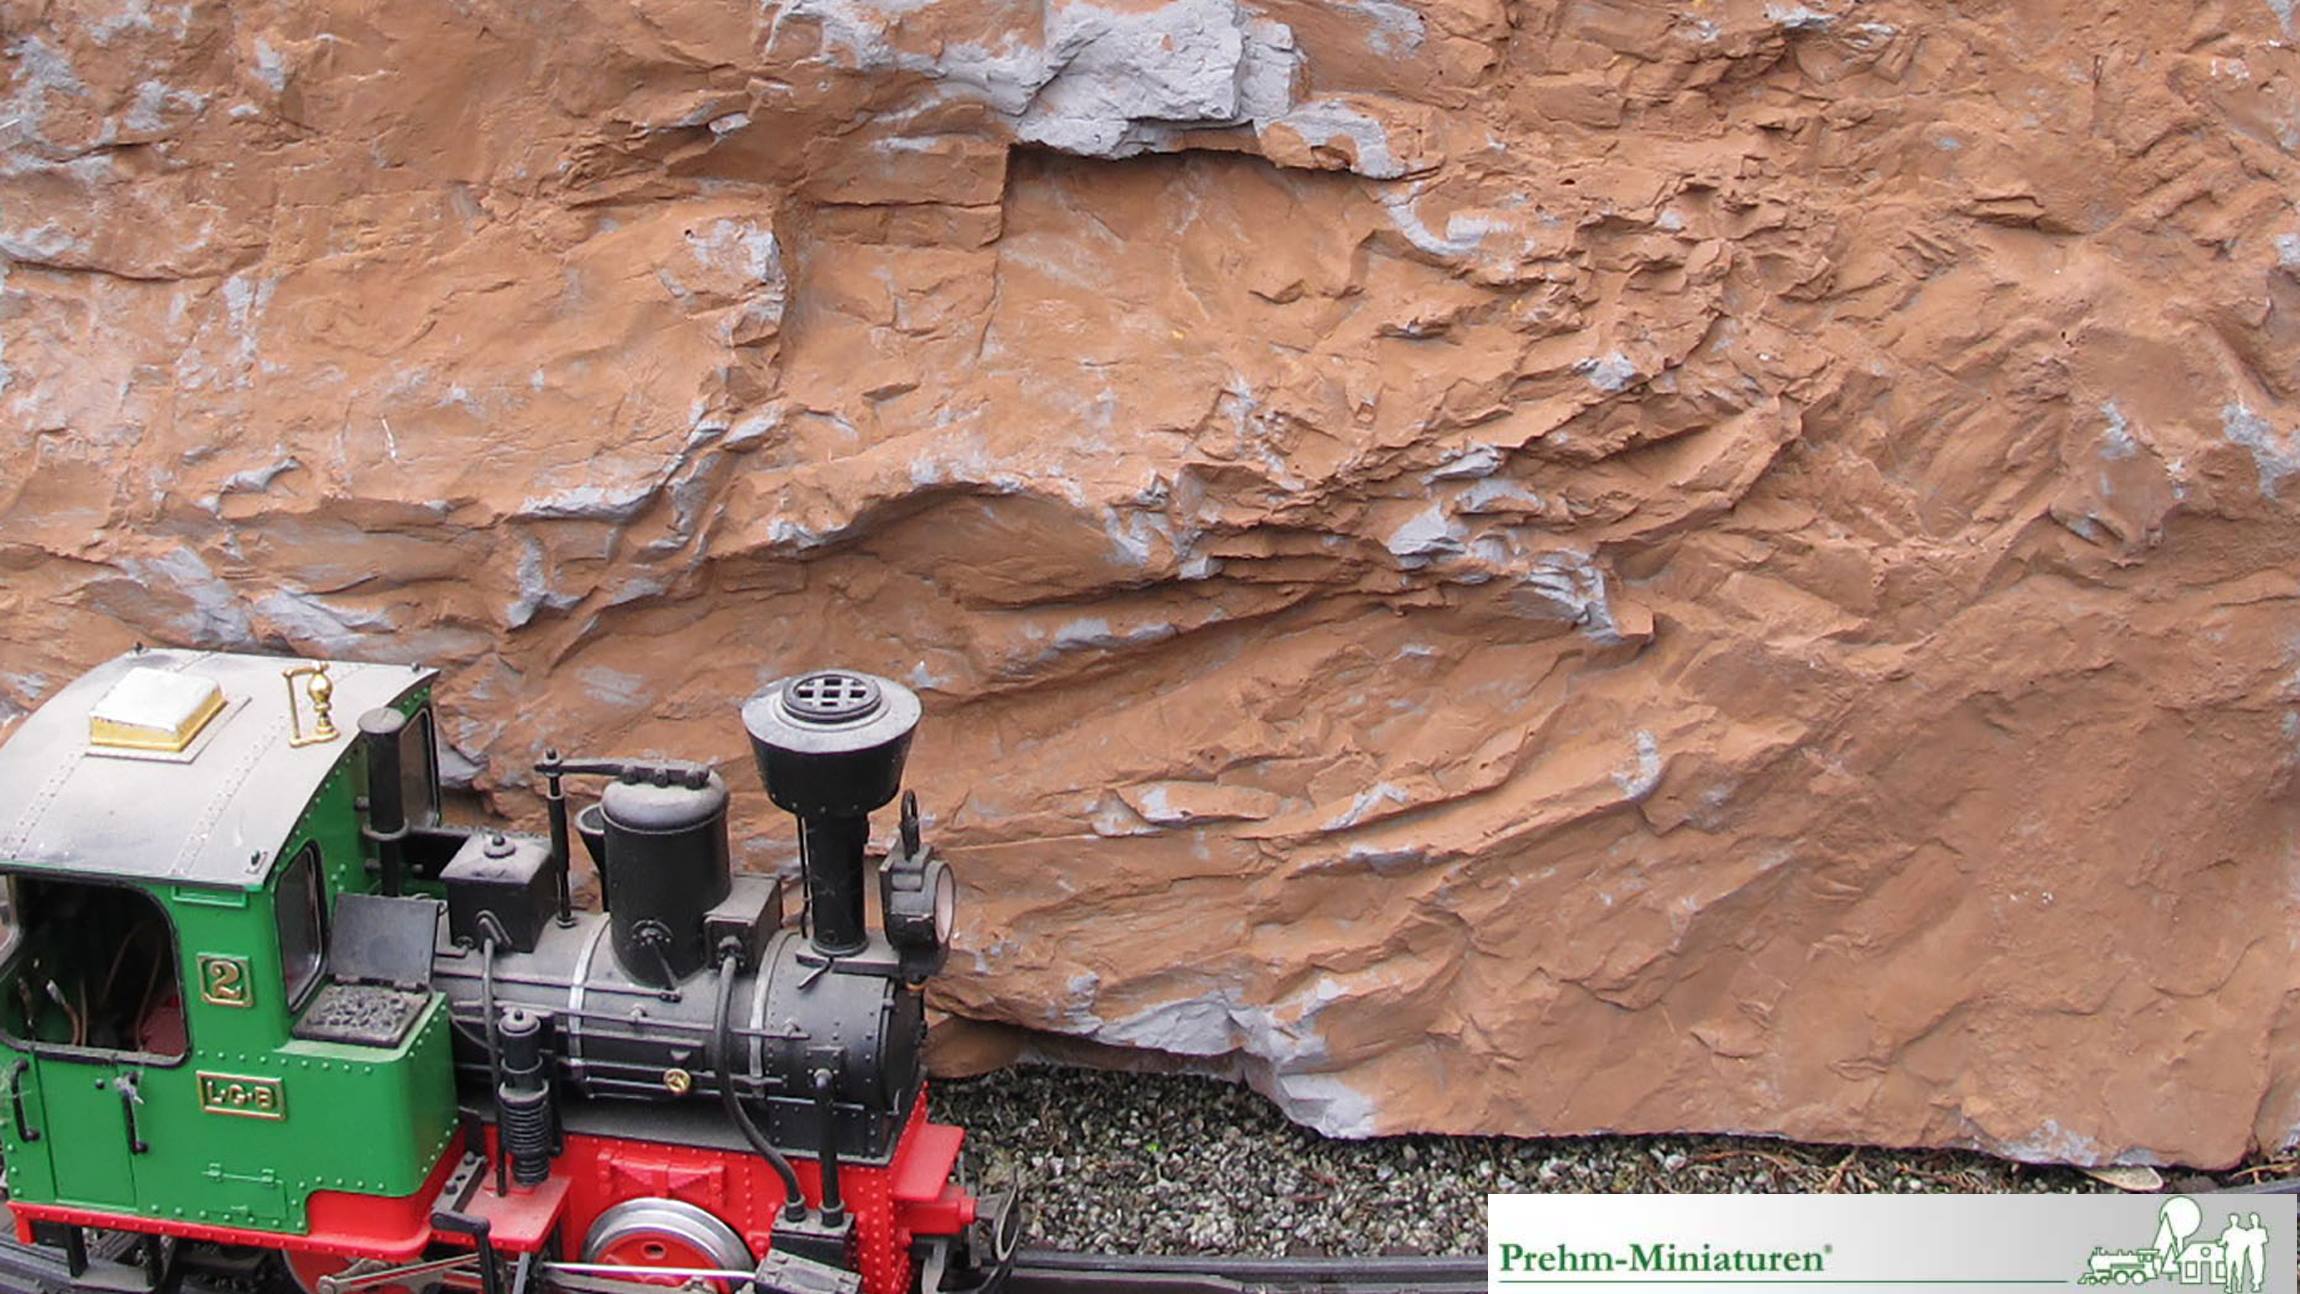 Ab 2019 bietet Prehm-Miniaturen eine weitere Komponente zum einfachen Bau von Felsen und Gebirge auf der Gartenbahn. Ob 30 cm oder 3 Meter hoch, mit den neuen Kunstfelsen ist der Bau von Gebirgen, Almwiesen oder Tunneleinfahrten kinderleicht.